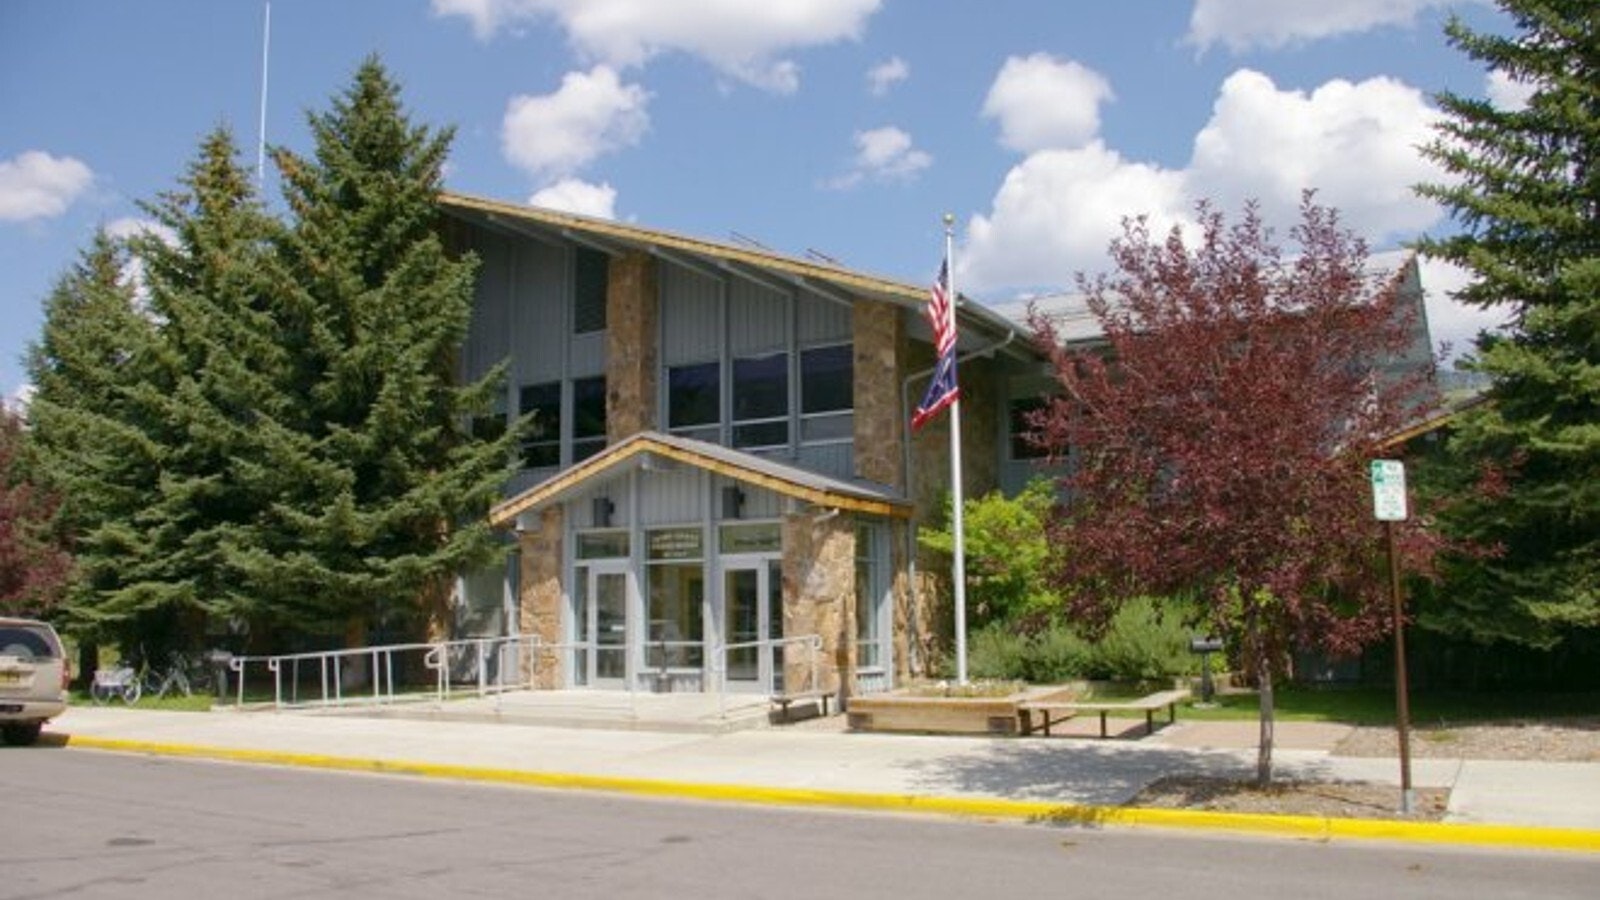 The Teton County Courthouse in Jackson, Wyoming.